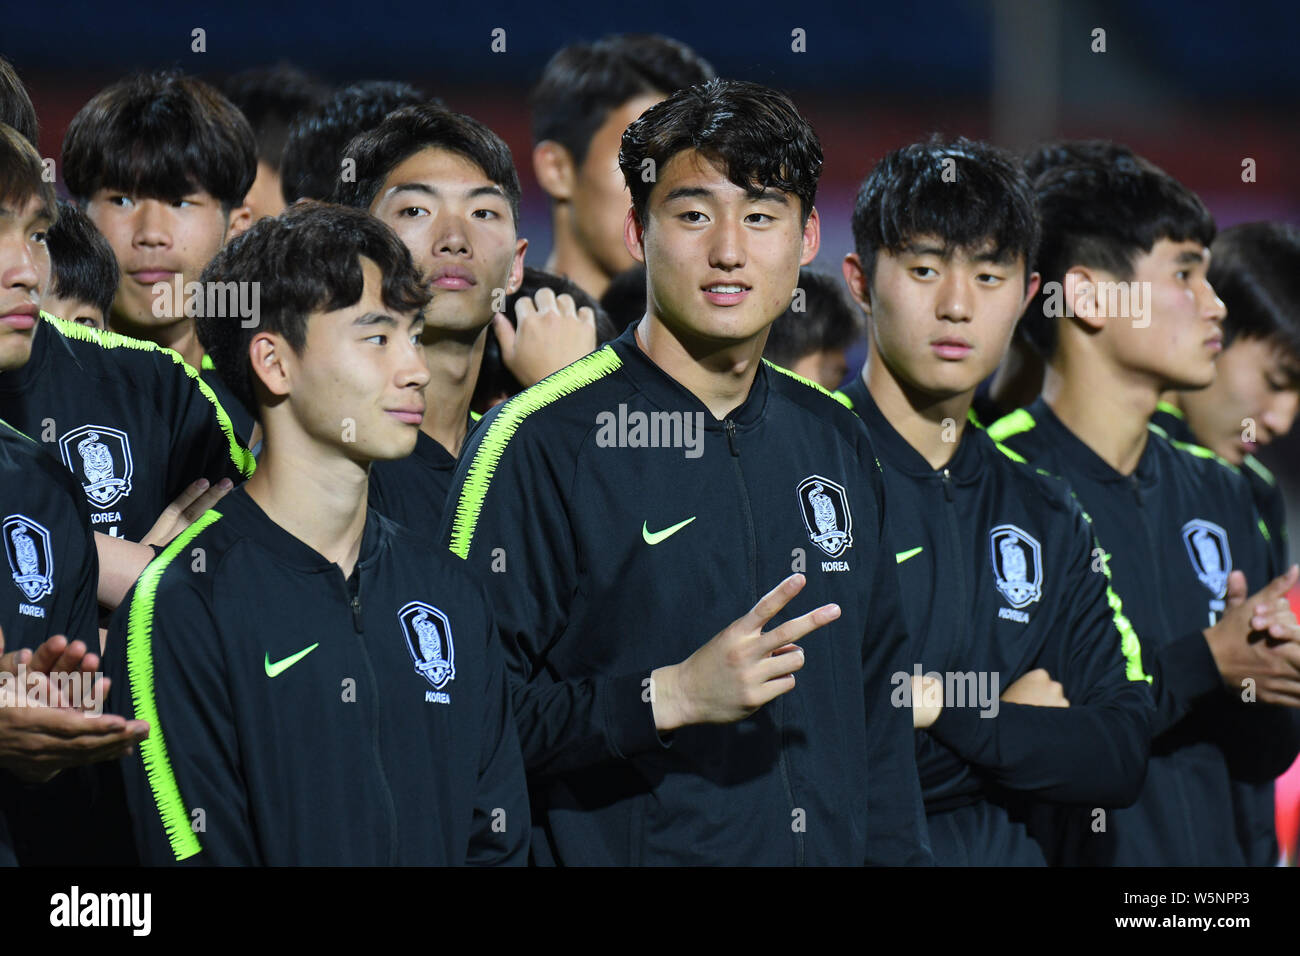 Spieler von Südkorea U 18 Stellen mit ihrer Trophäe nach dem Sieg über China U18 während der Panda Cup International Jugend Fußball Turnier 2019 in Cheng Stockfoto